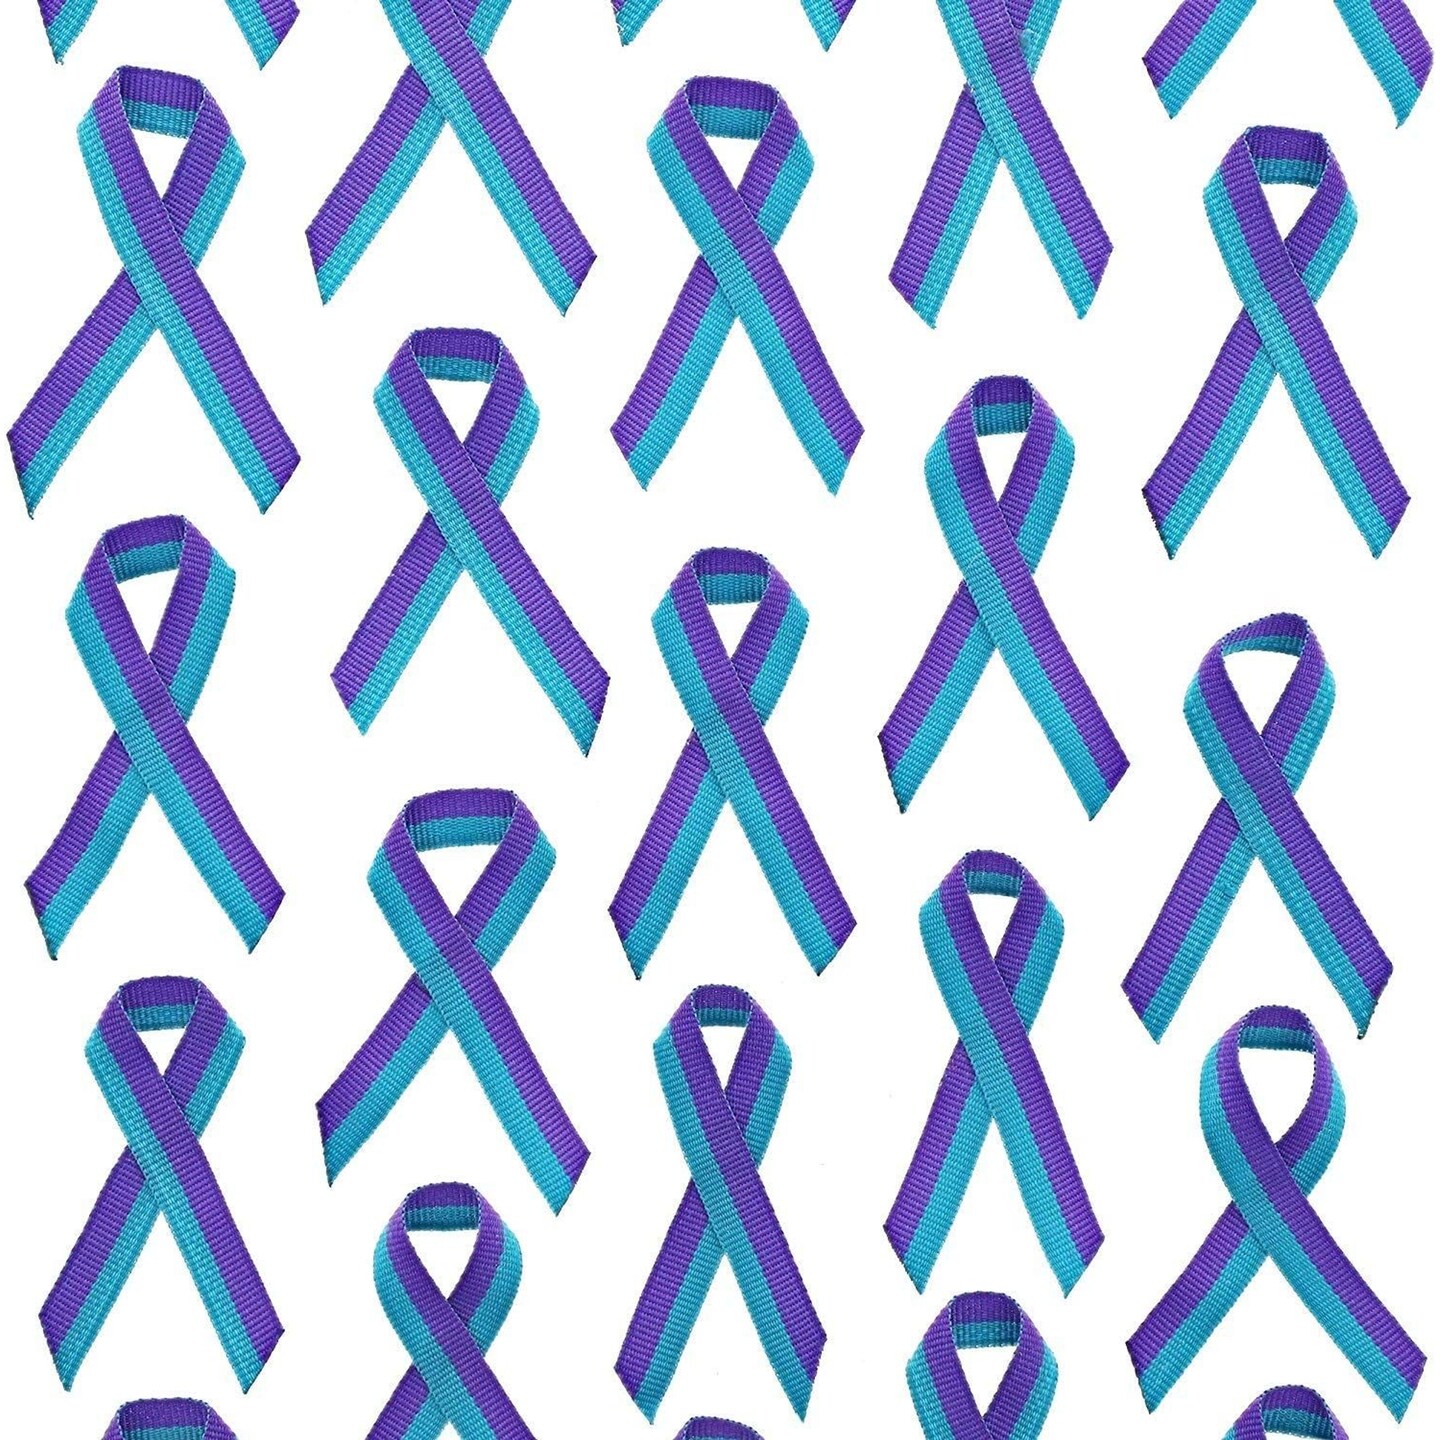 Teal and Purple Fabric Awareness Ribbons - 250 ribbons / bag